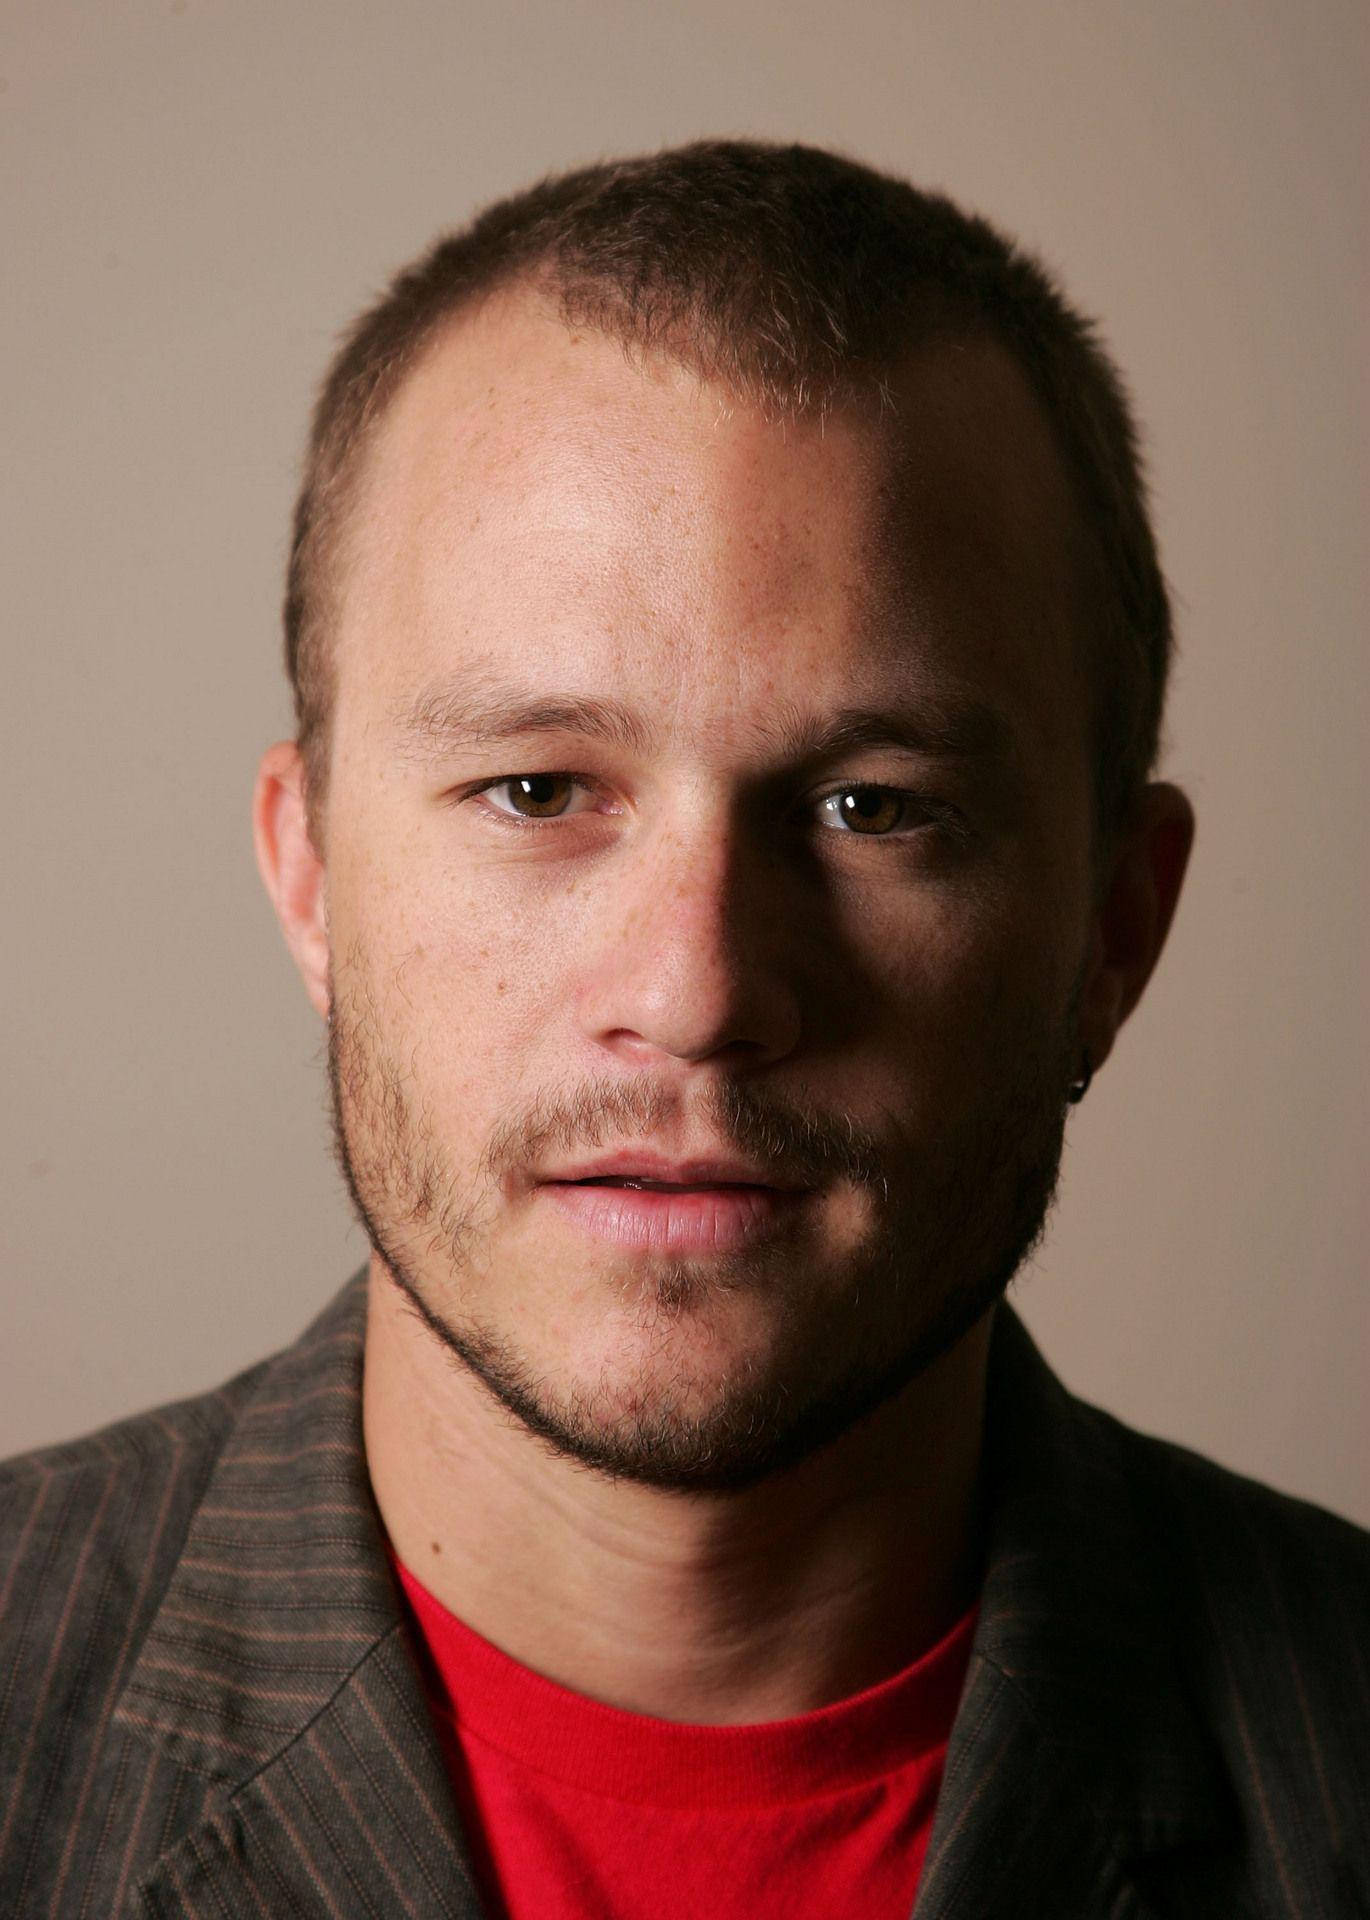 Heath Ledger Portrait Background